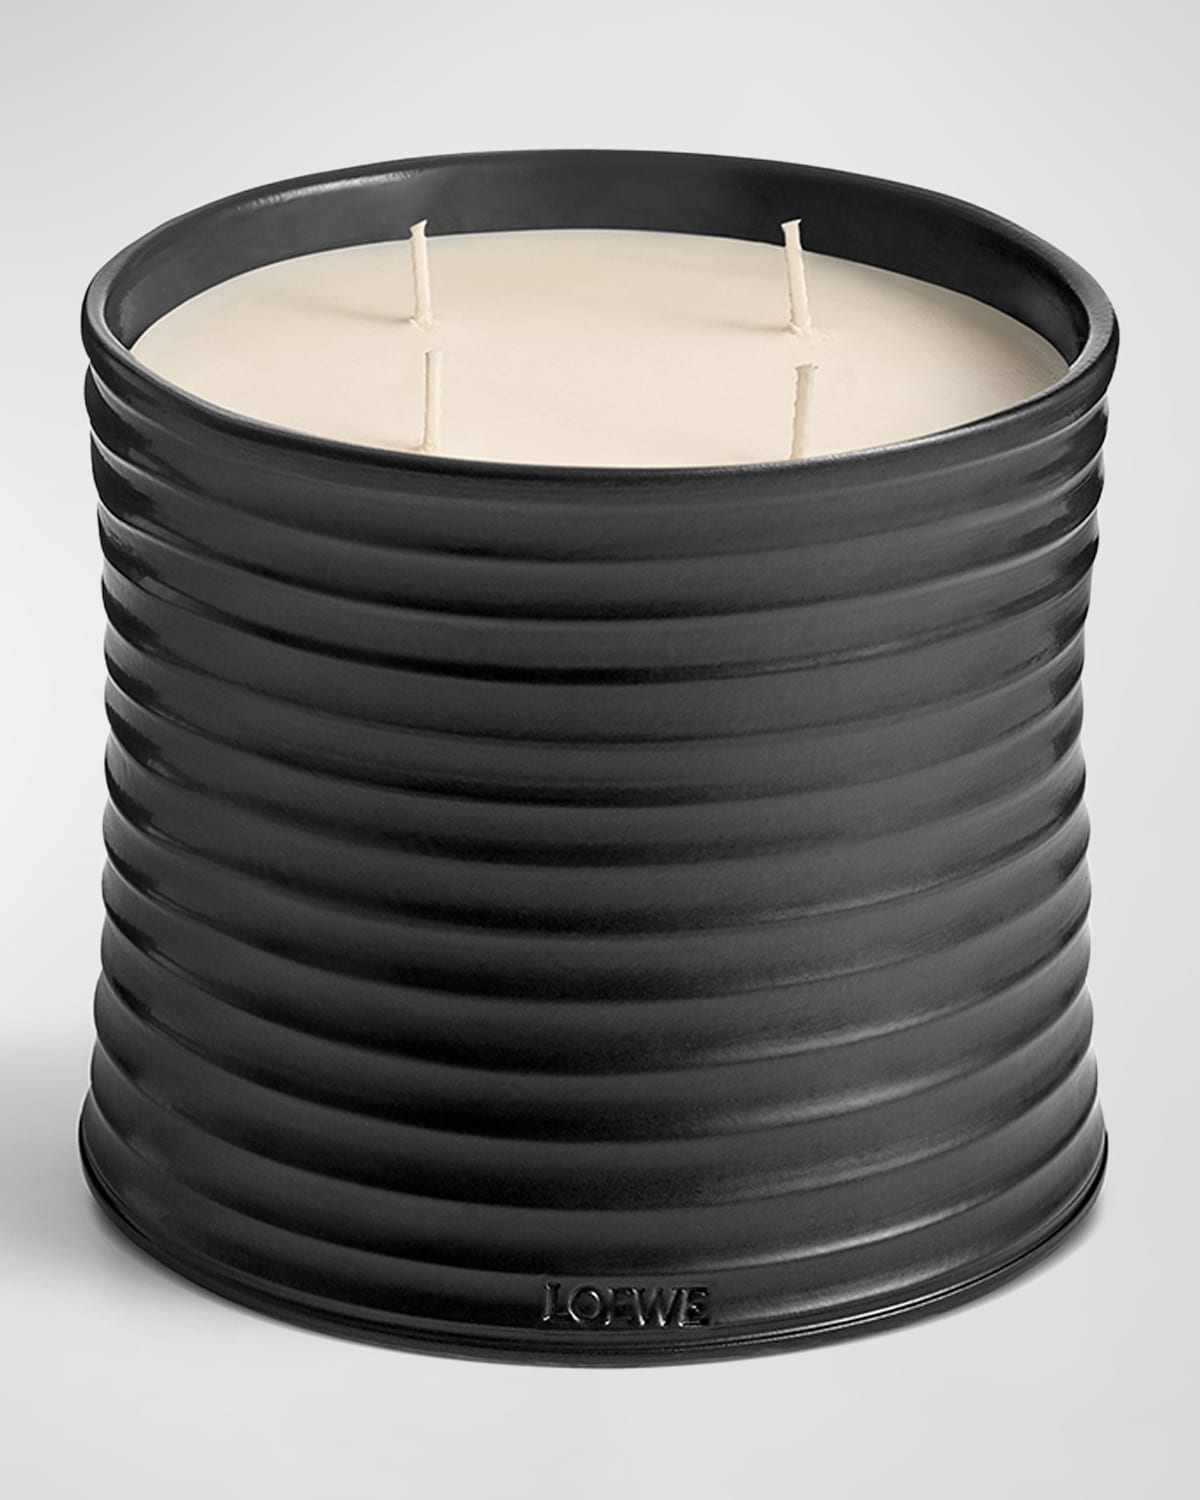 Shop Loewe Roasted Hazelnut Candle, 2120 G